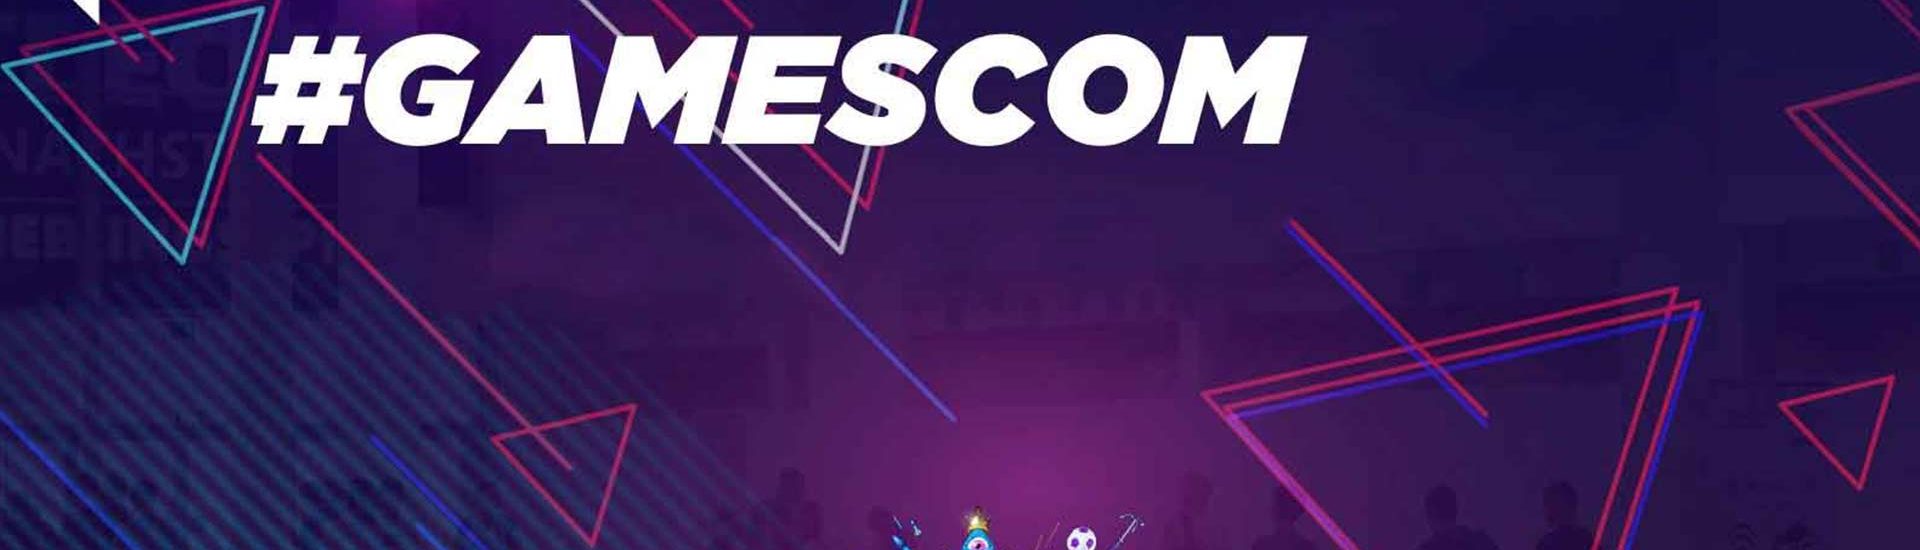 Gamescom Opening Night Live: Host Goeff Keighley heizt die Spannung weiter an